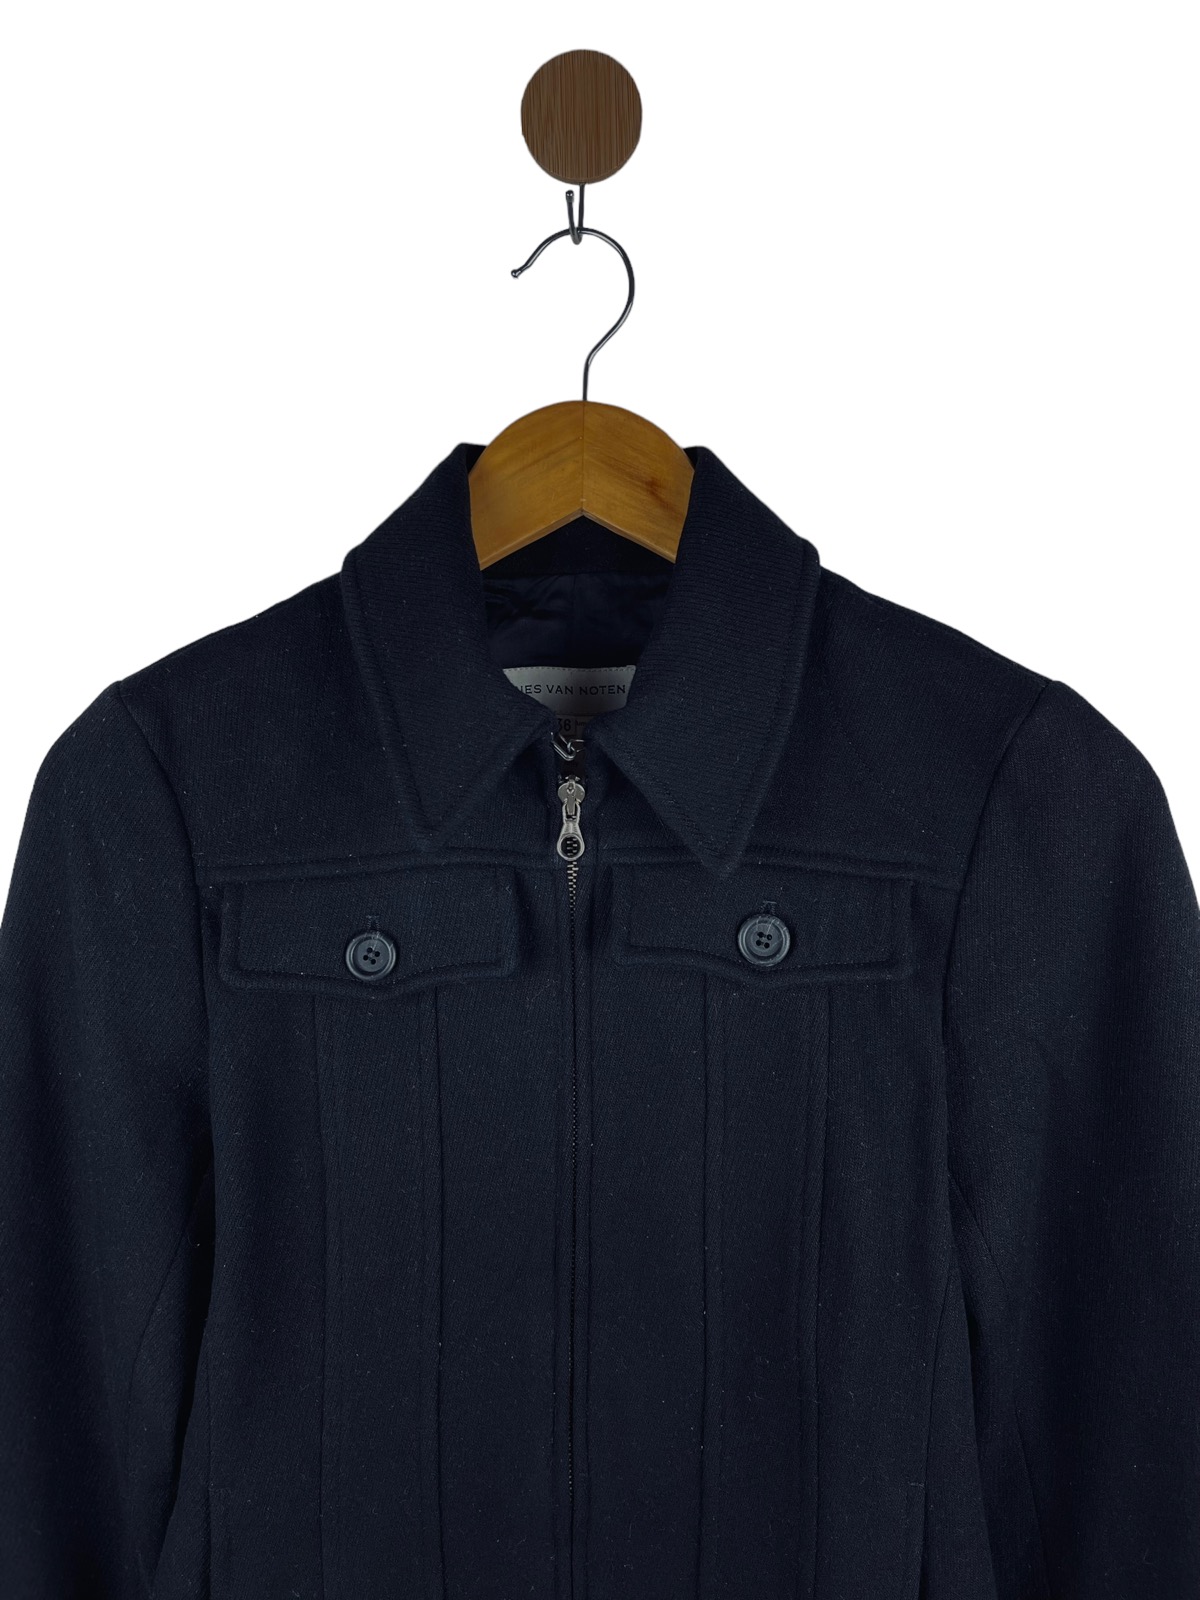 Two Way Zip, Wool Jacket Dries Van Noten size 36 - 7